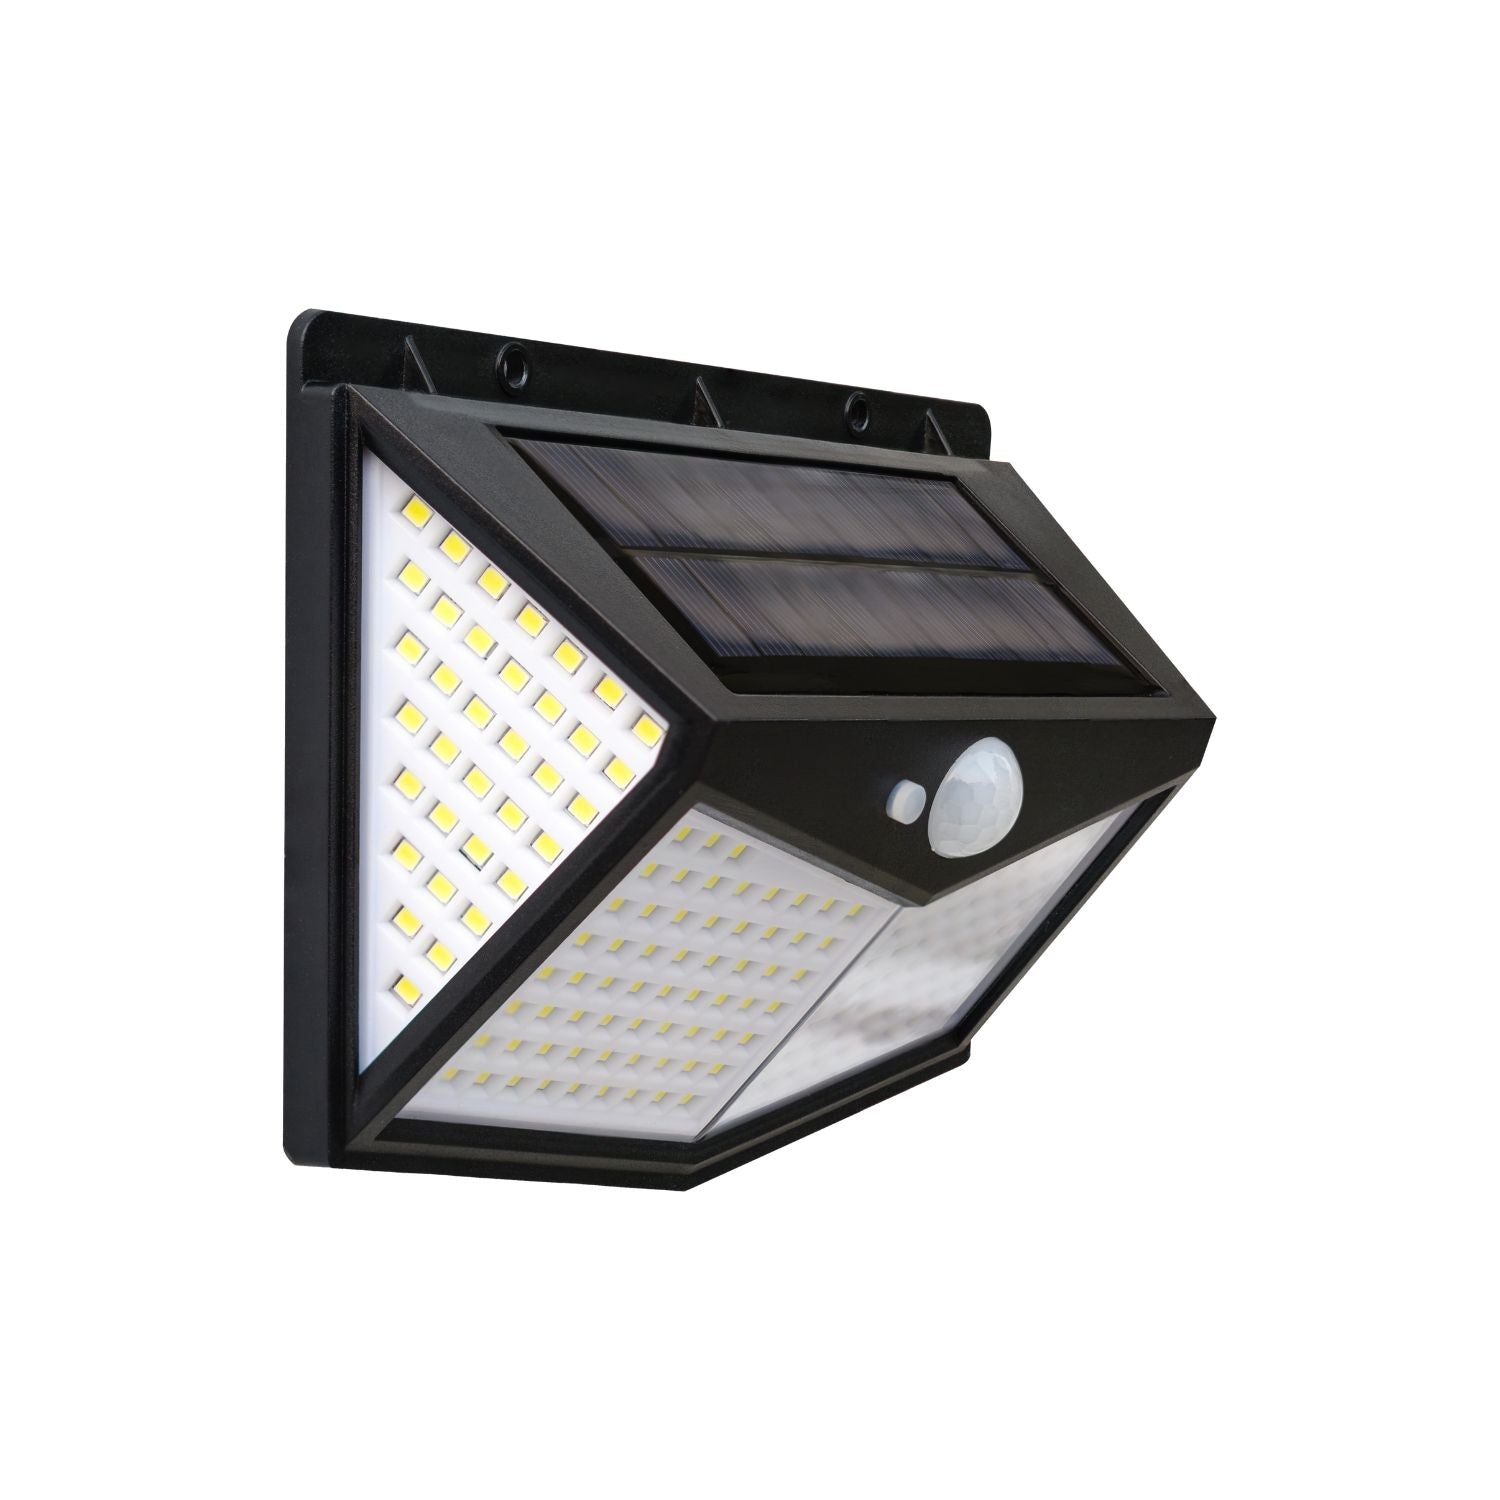 NOVEDEN 6 Packs Solar LED Lights with 3 Light Modes (Black)